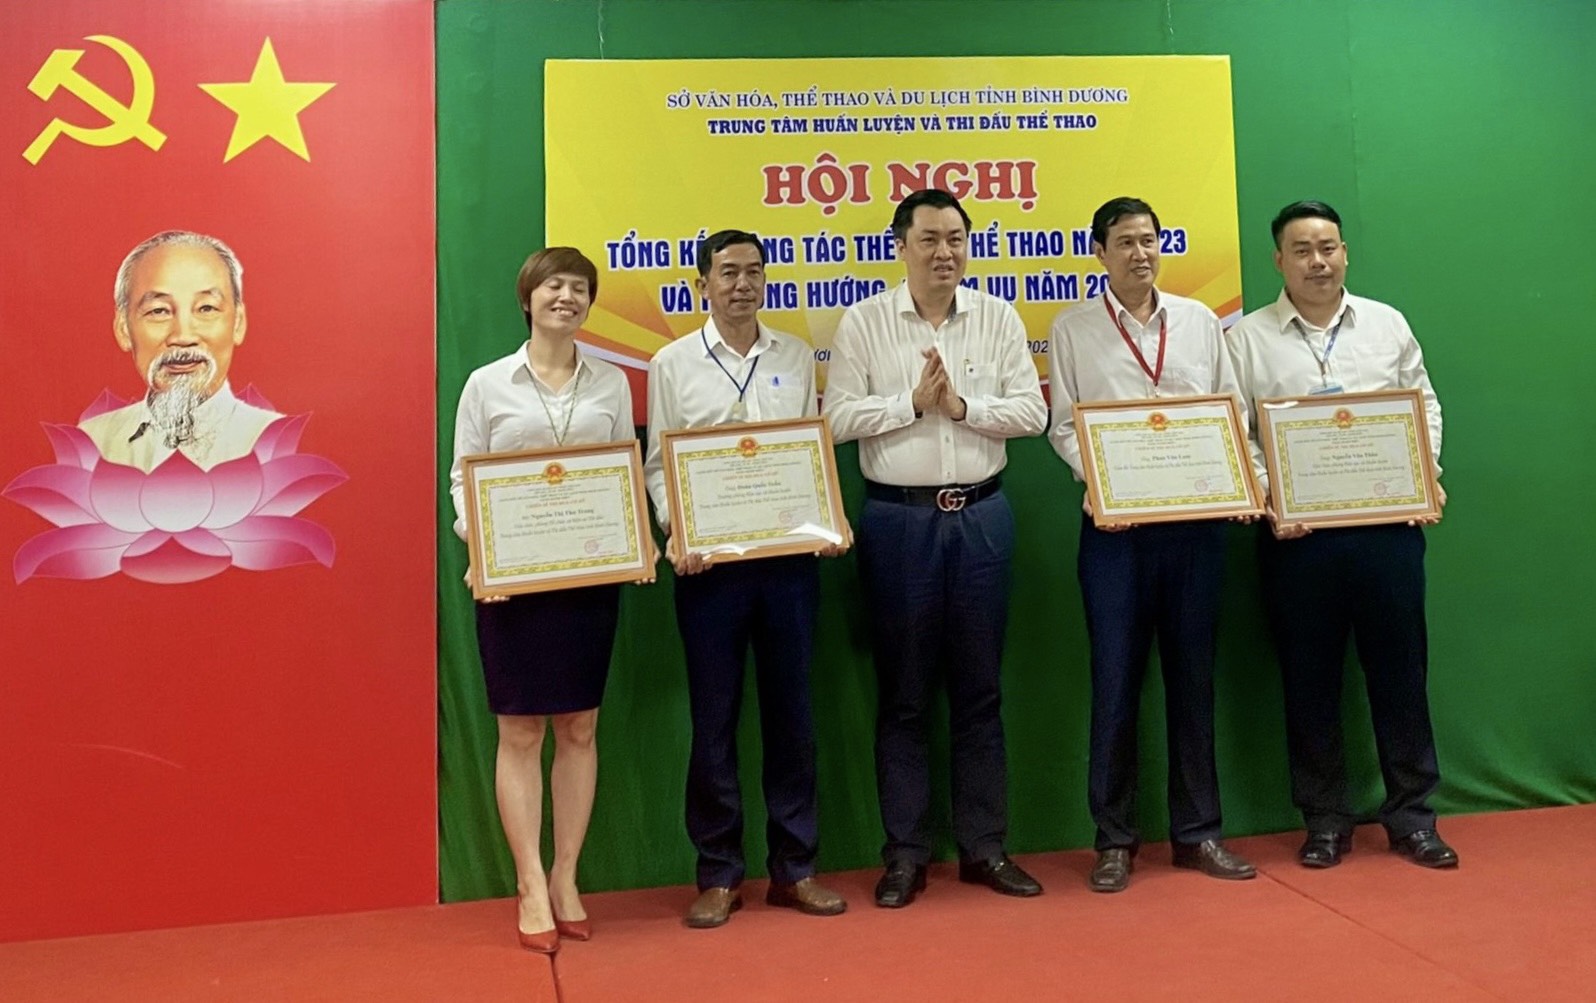 Ông Cao Văn Chóng - Phó Giám đốc Sở Văn hóa, Thể thao và Du lịch tỉnh Bình Dương trao tặng danh hiệu Chiến sĩ thi đua cơ sở cho các cá nhân